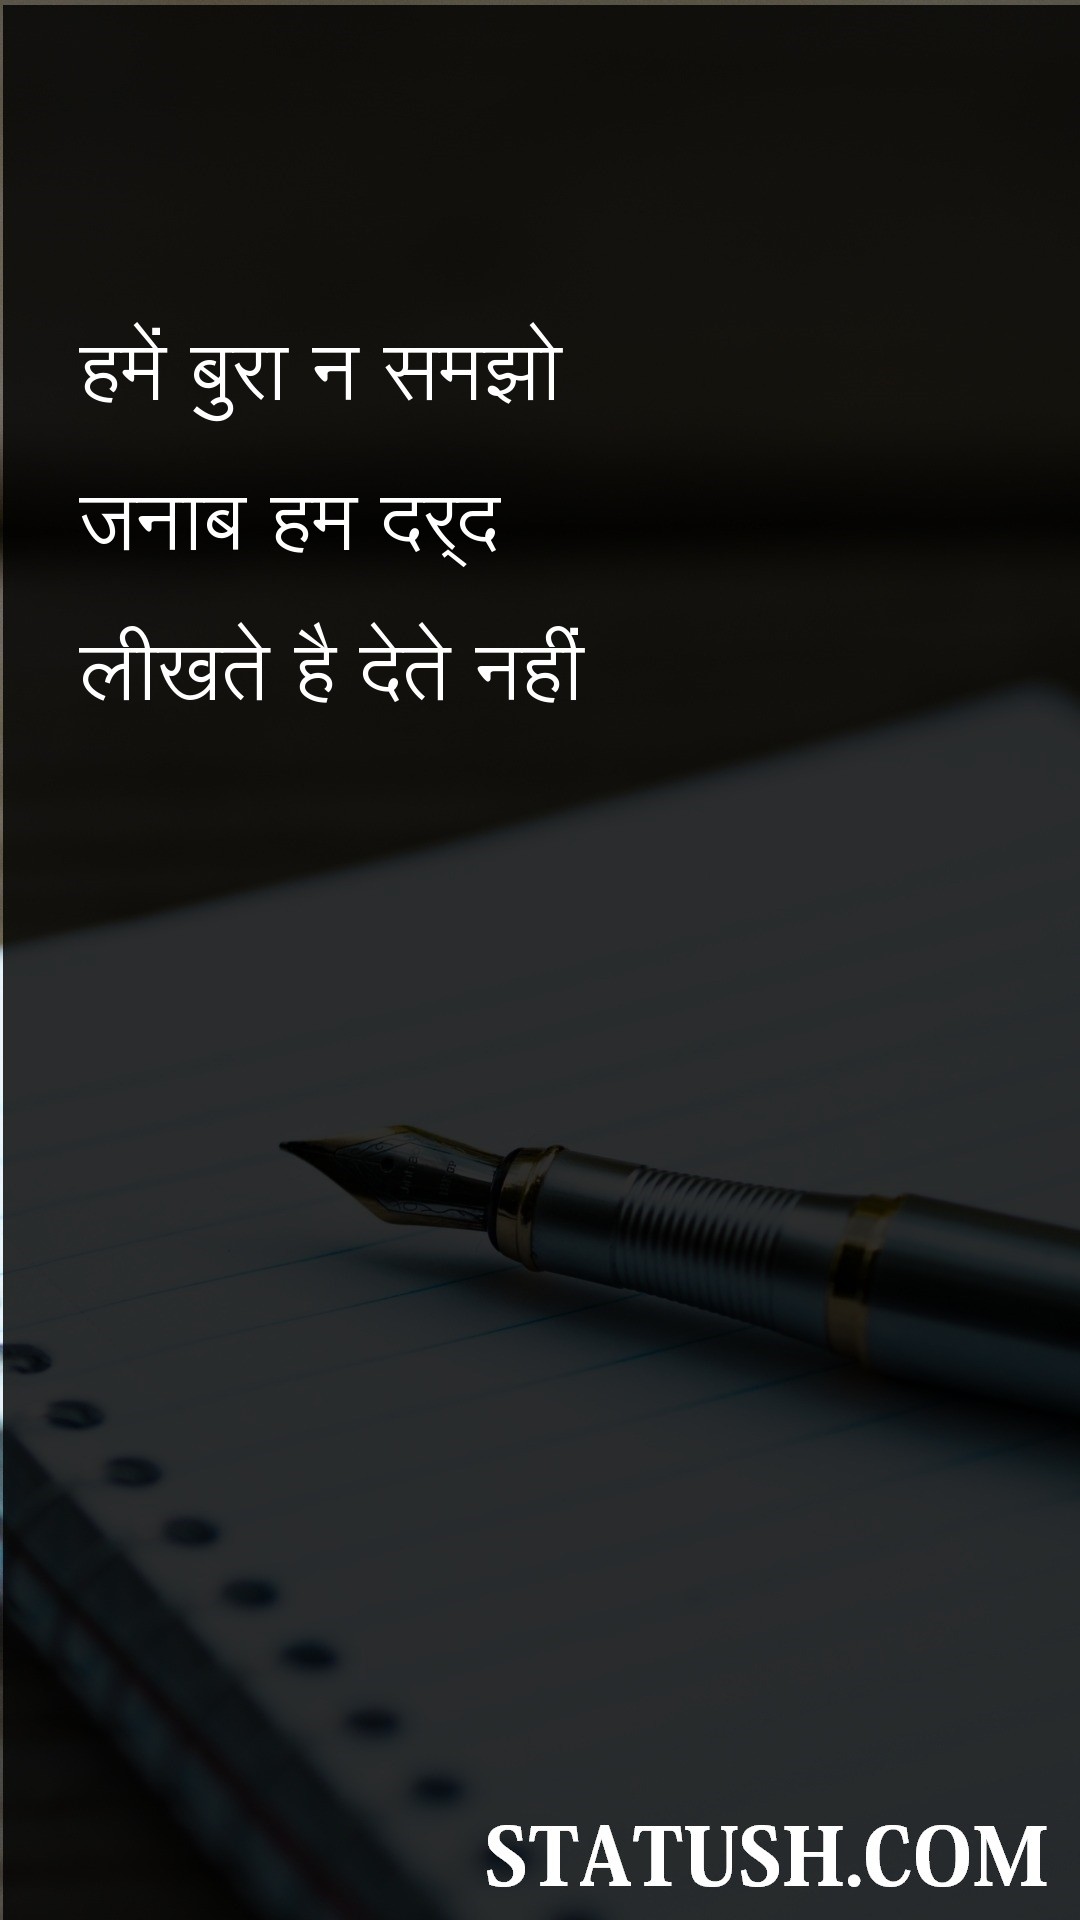 we dont give pain - Hindi Quotes at statush.com